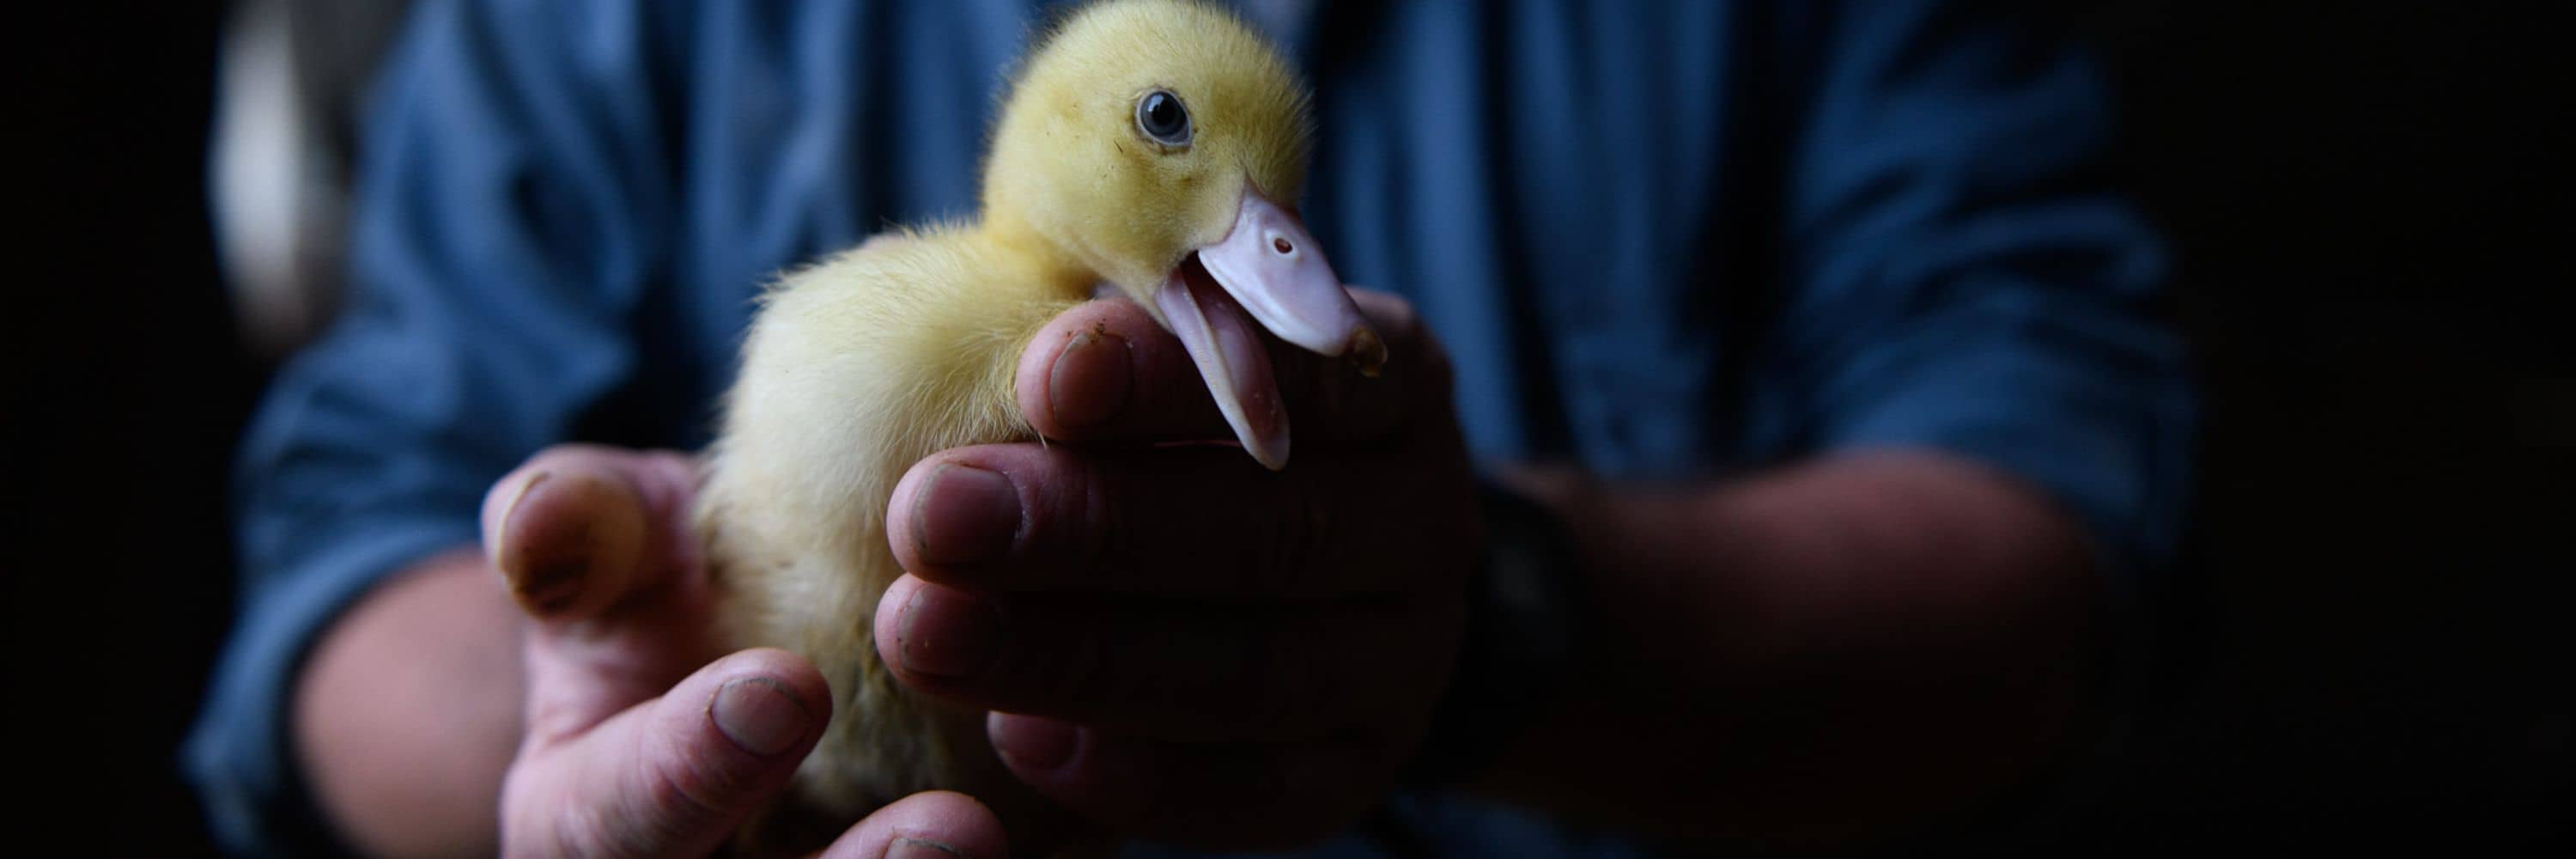 Un operario de una granja de producción de foie gras sostiene entre sus manos a un patito amarillo que mira a la cámara.